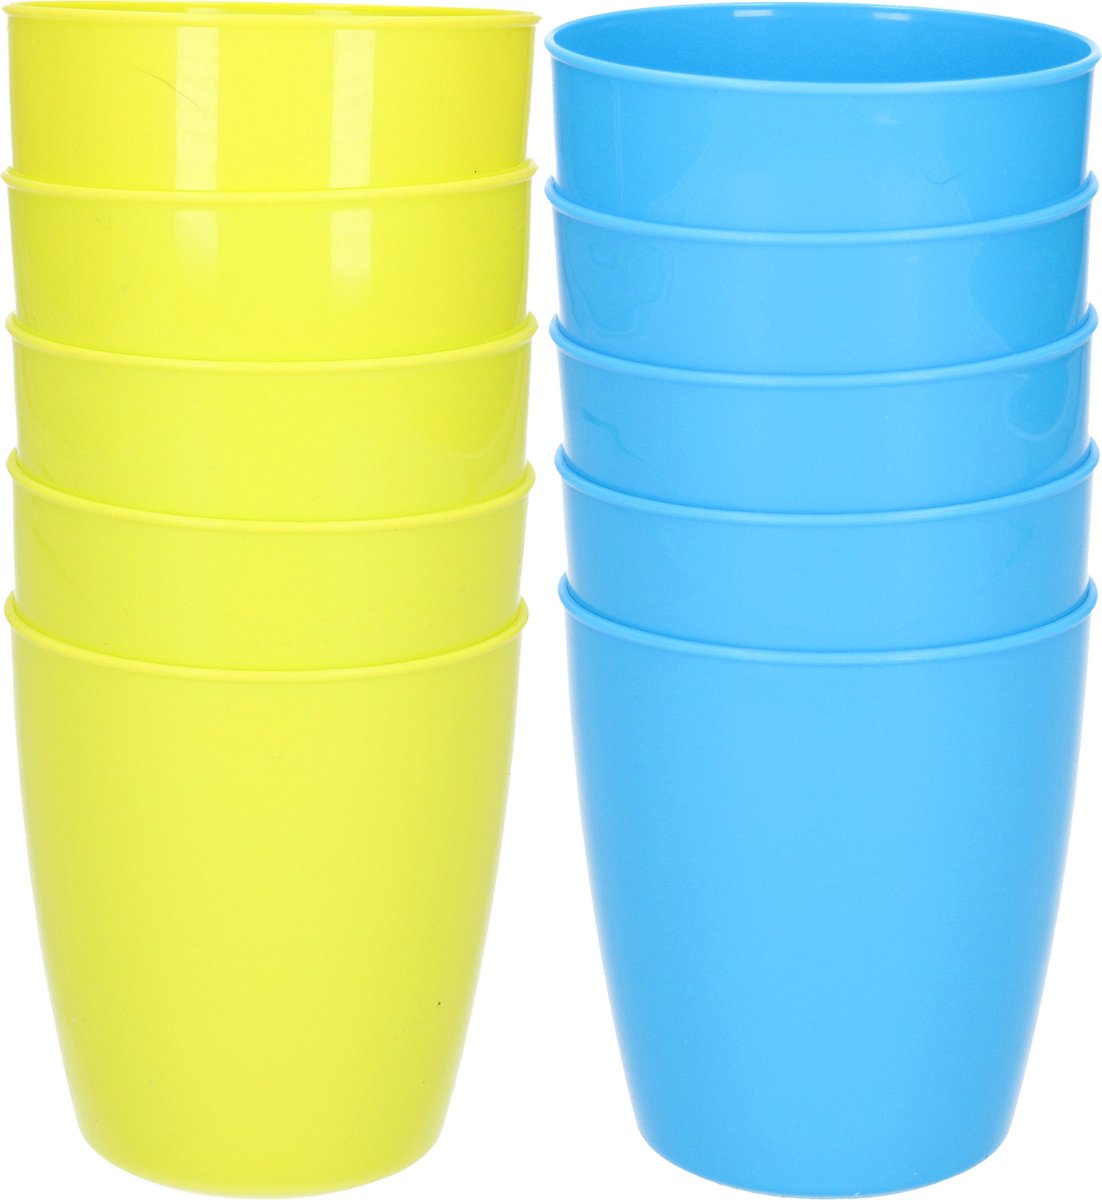 30x stuks onbreekbare kunststof water/sap/limonade glazen 300 ML in het groen en blauw - Camping/verjaardag/peuters/kleuters